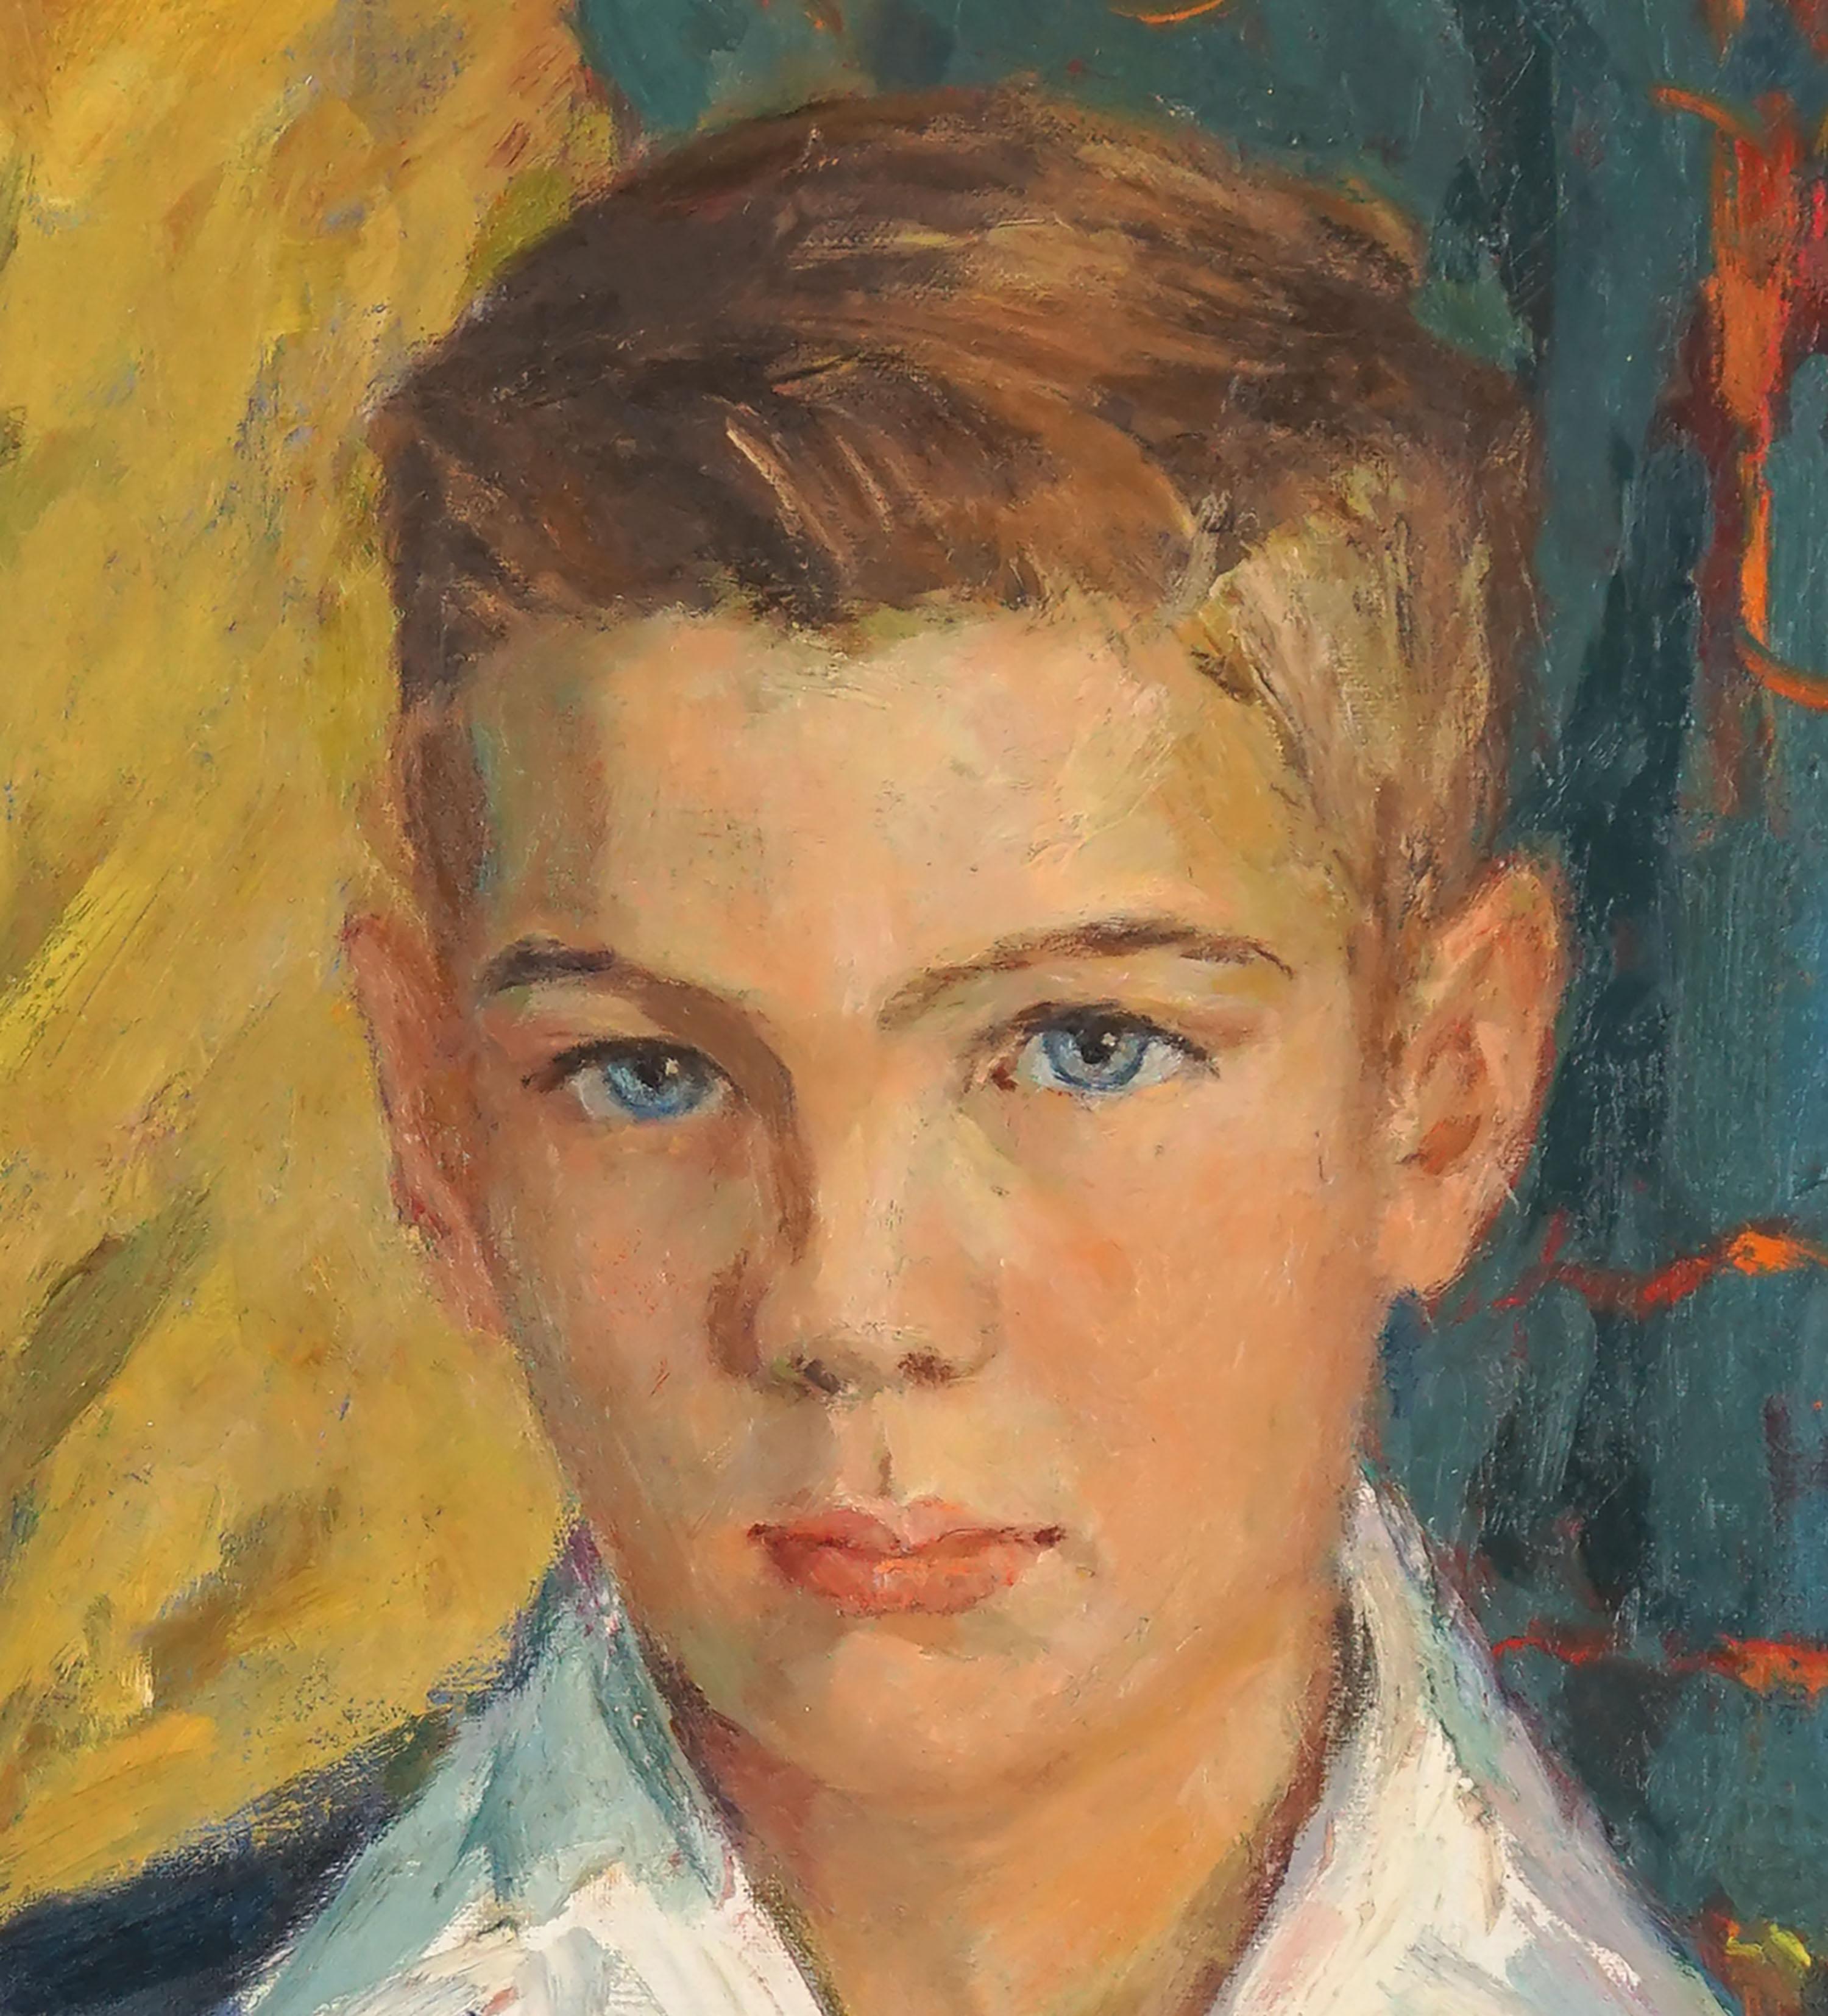 Schöner blauer Augenbrauner Junge, Vintage-Porträt, kalifornischer Impressionist (Amerikanischer Impressionismus), Painting, von California School